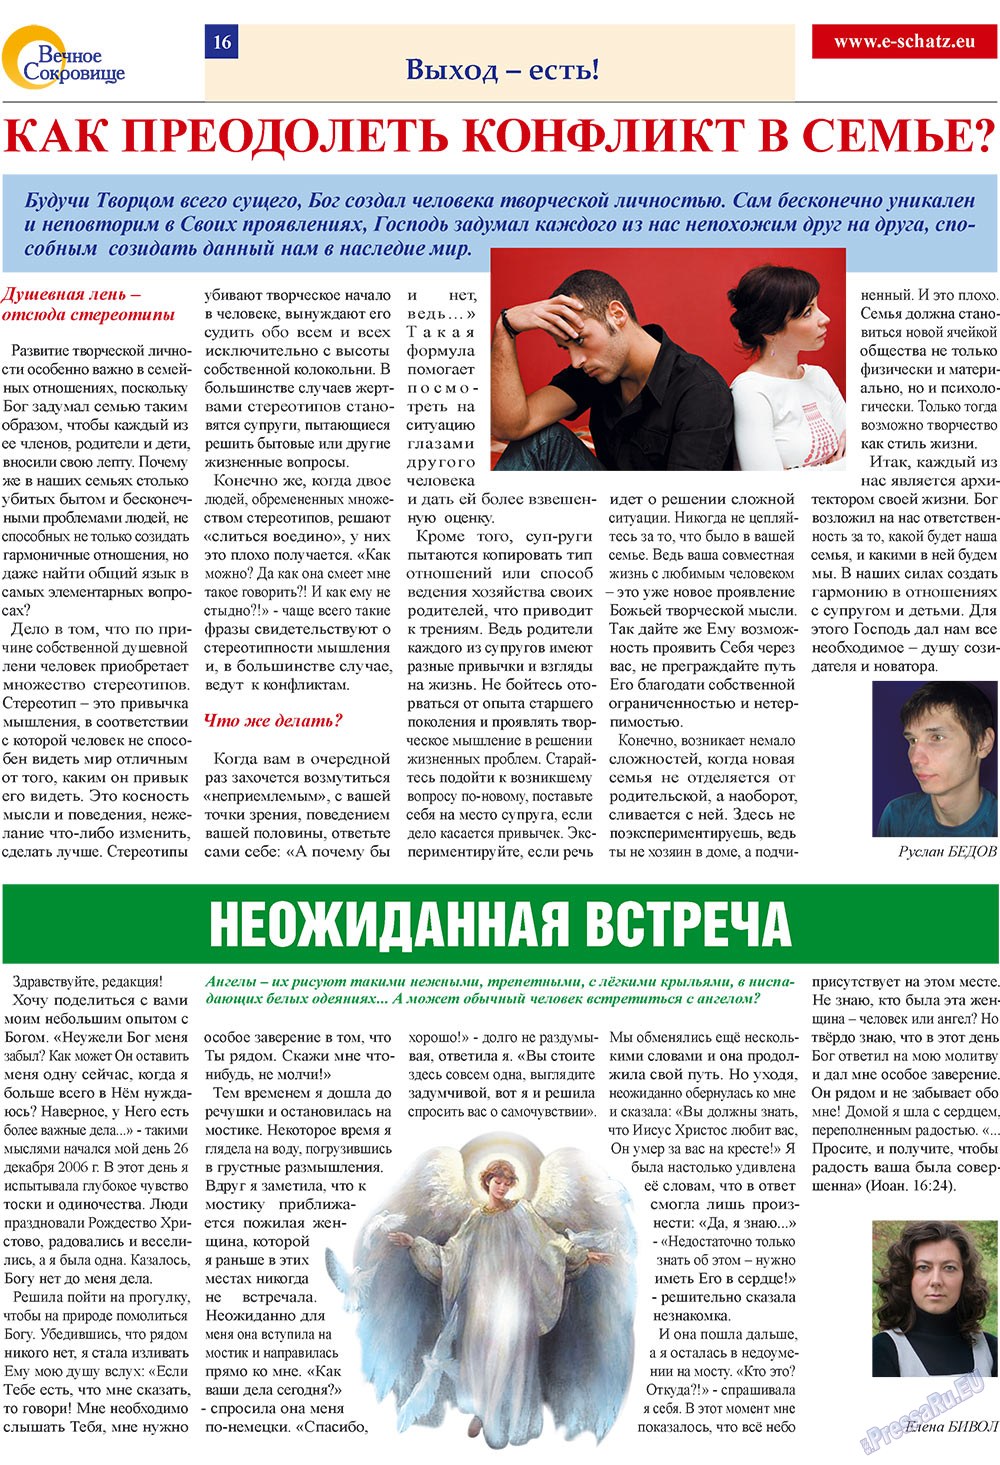 Вечное сокровище (газета). 2009 год, номер 1, стр. 16